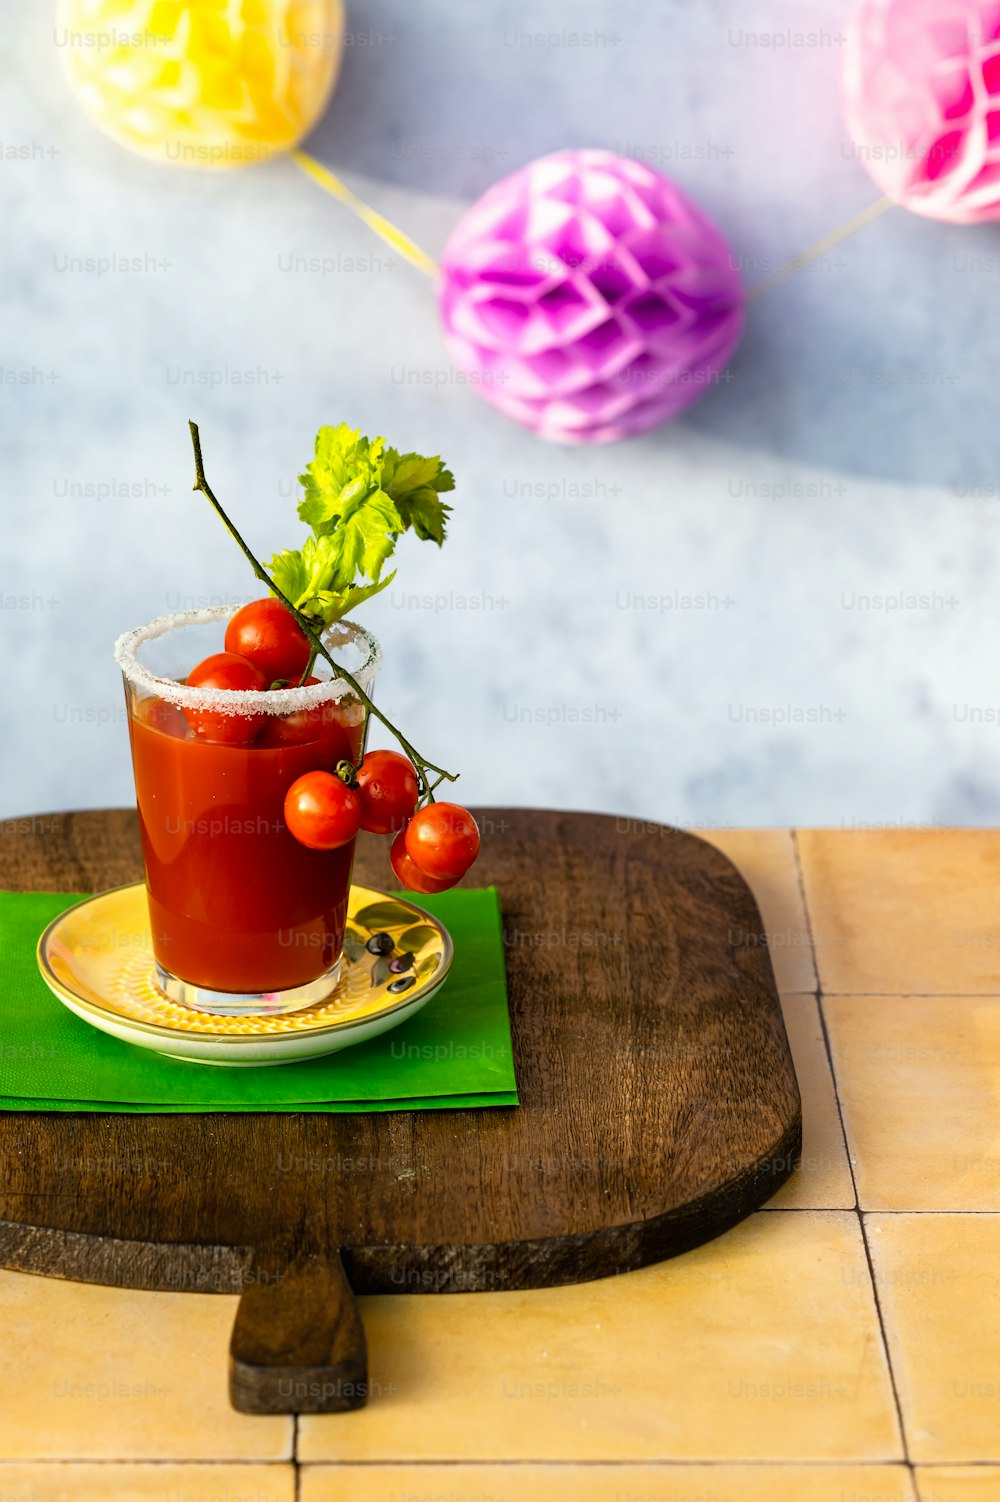 Une boisson sanglante avec des tomates cerises dans une assiette